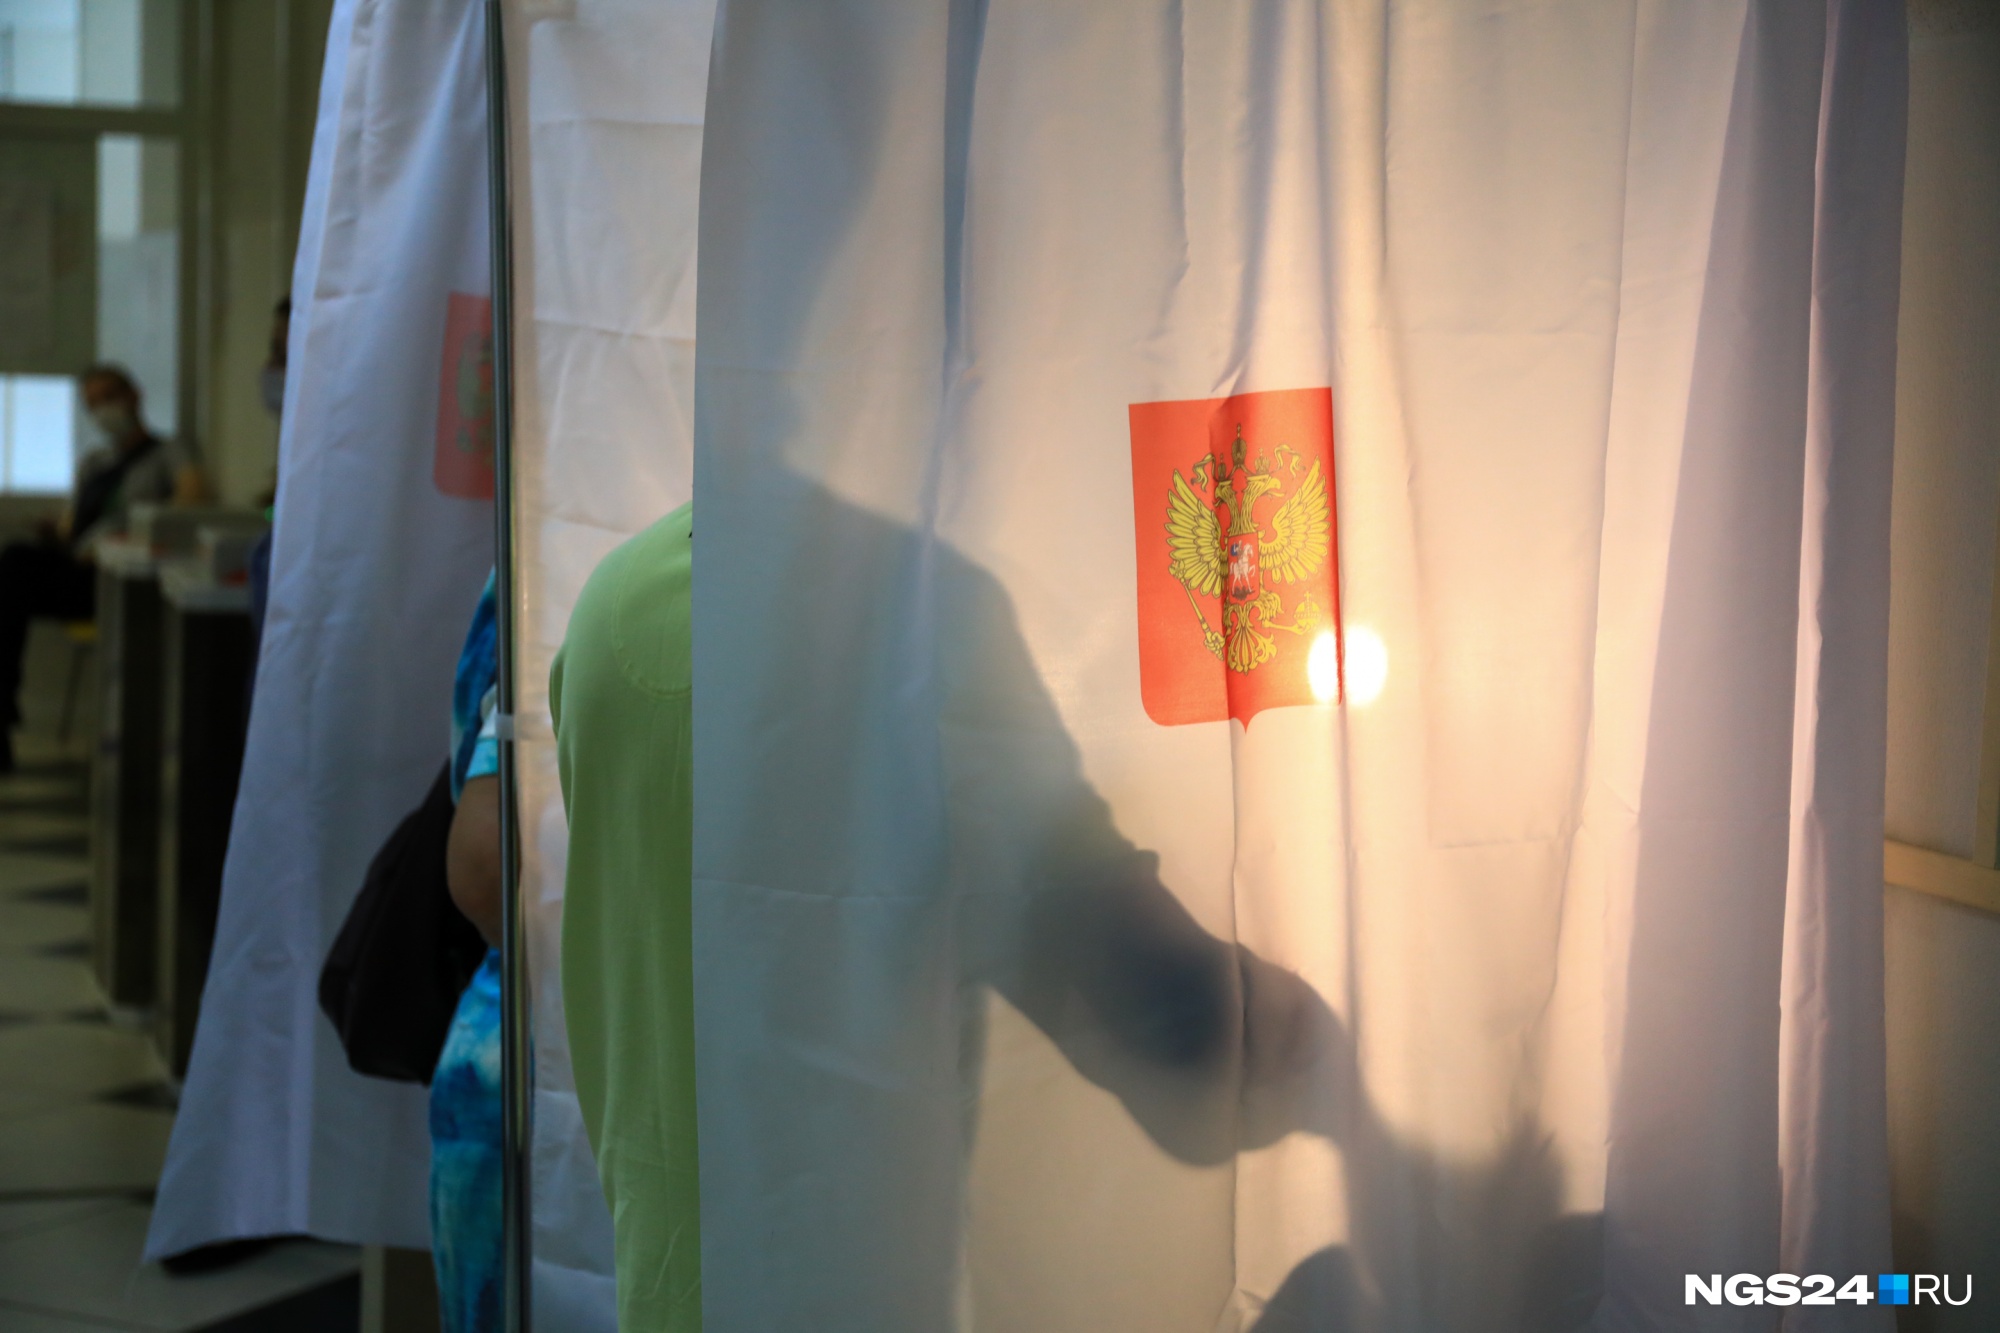 Сторож из Воркуты и ремонтник из РУСАЛА: против оппозиции на выборах в ЗС внезапно много однофамильцев